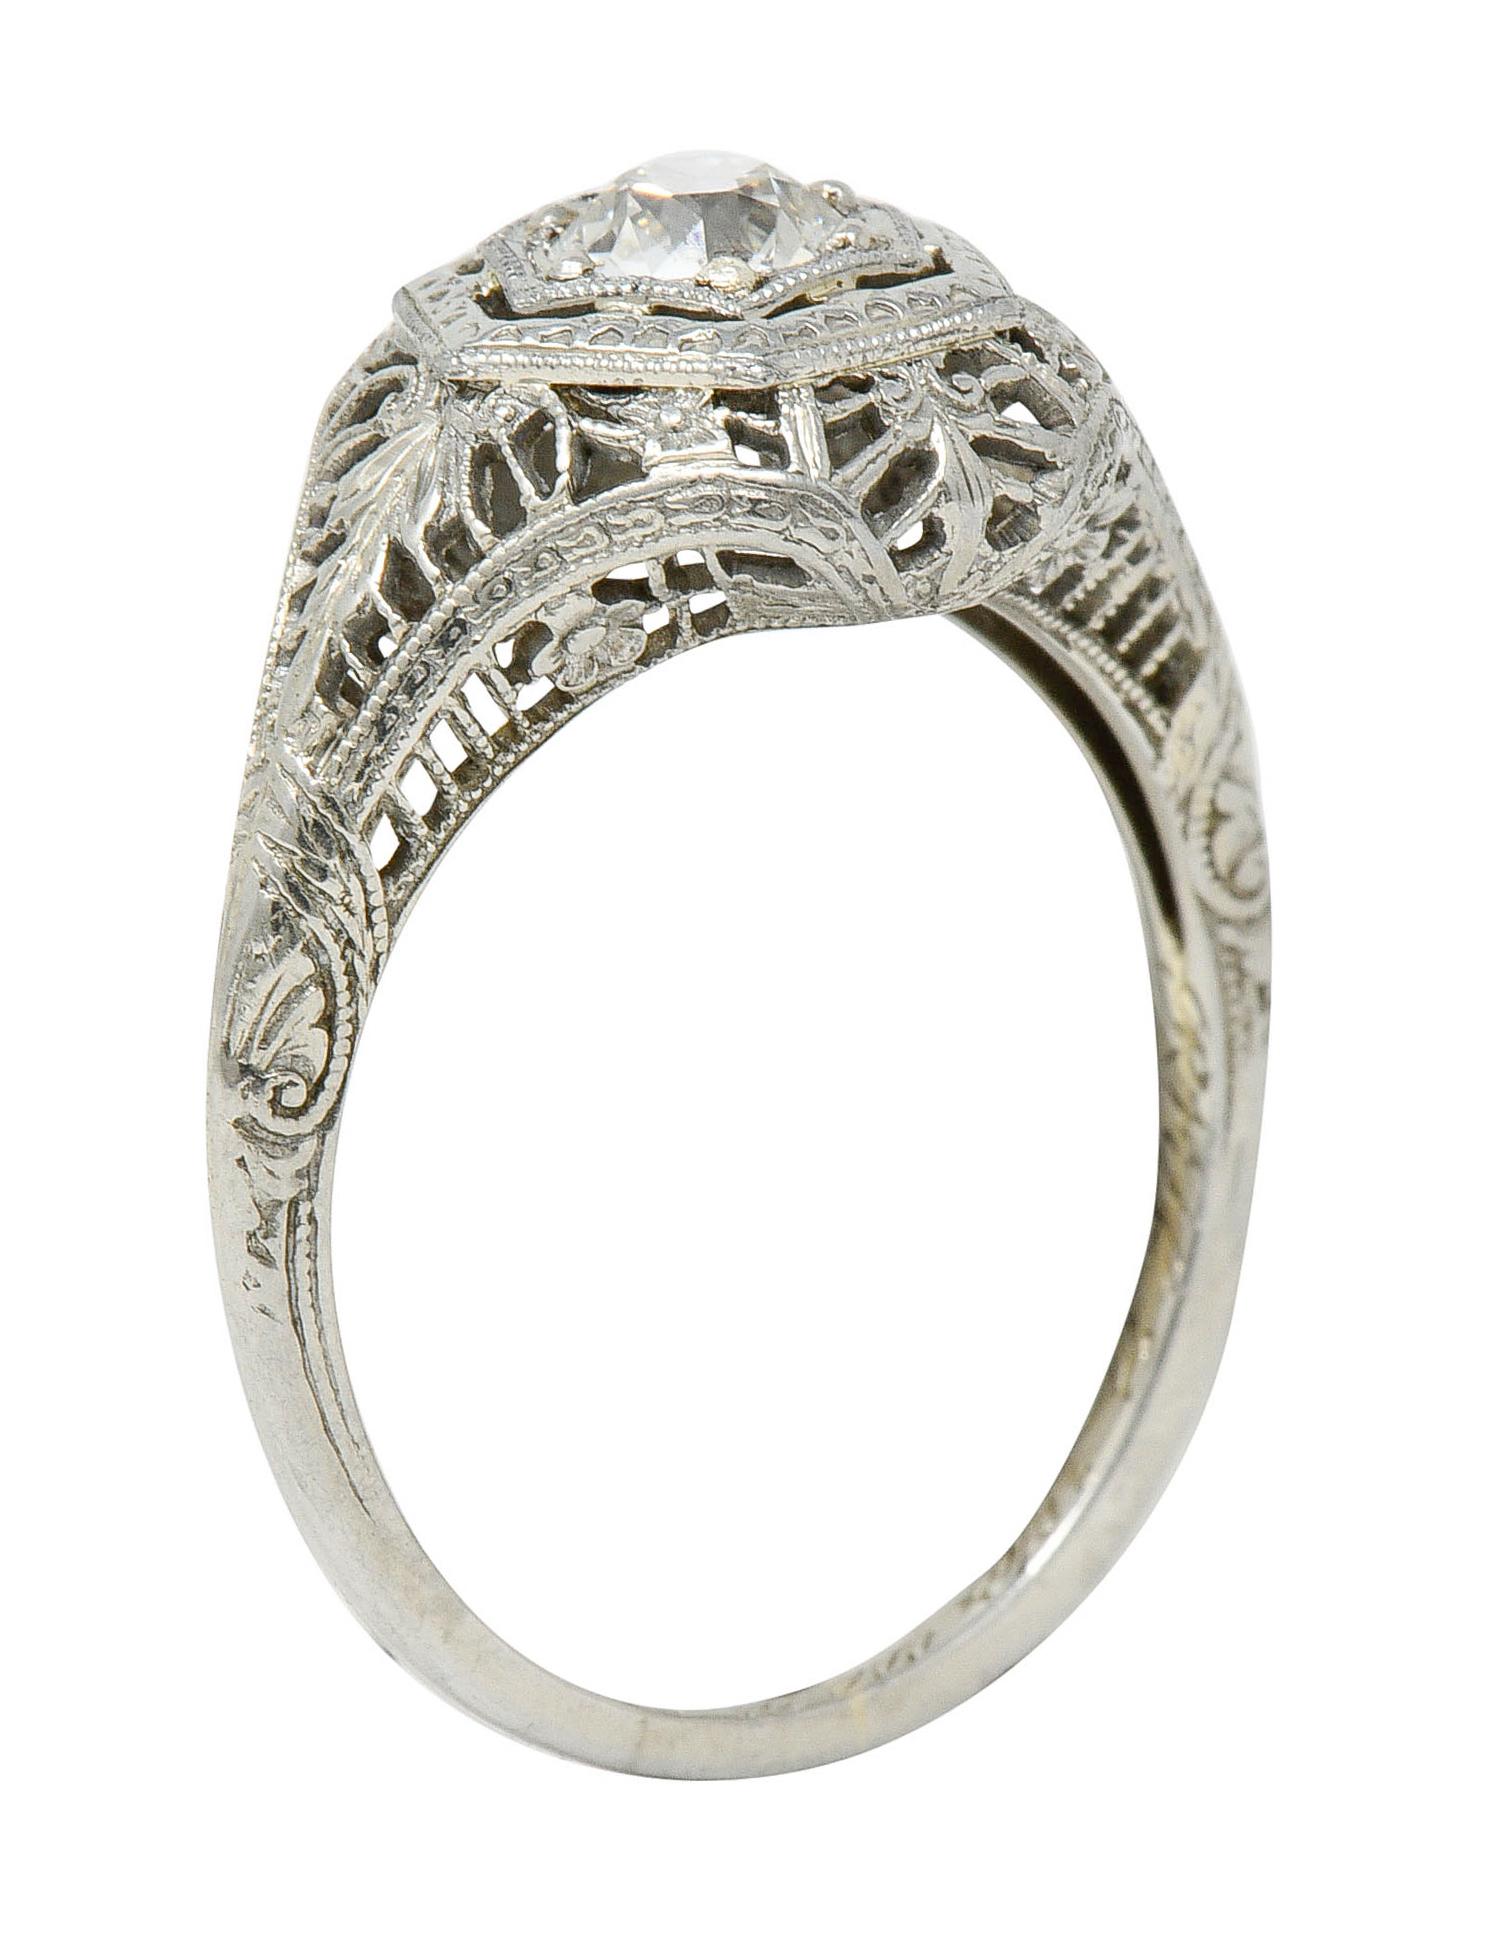 Edwardian Diamond 18 Karat White Gold Hexagonal Engagement Ring 4